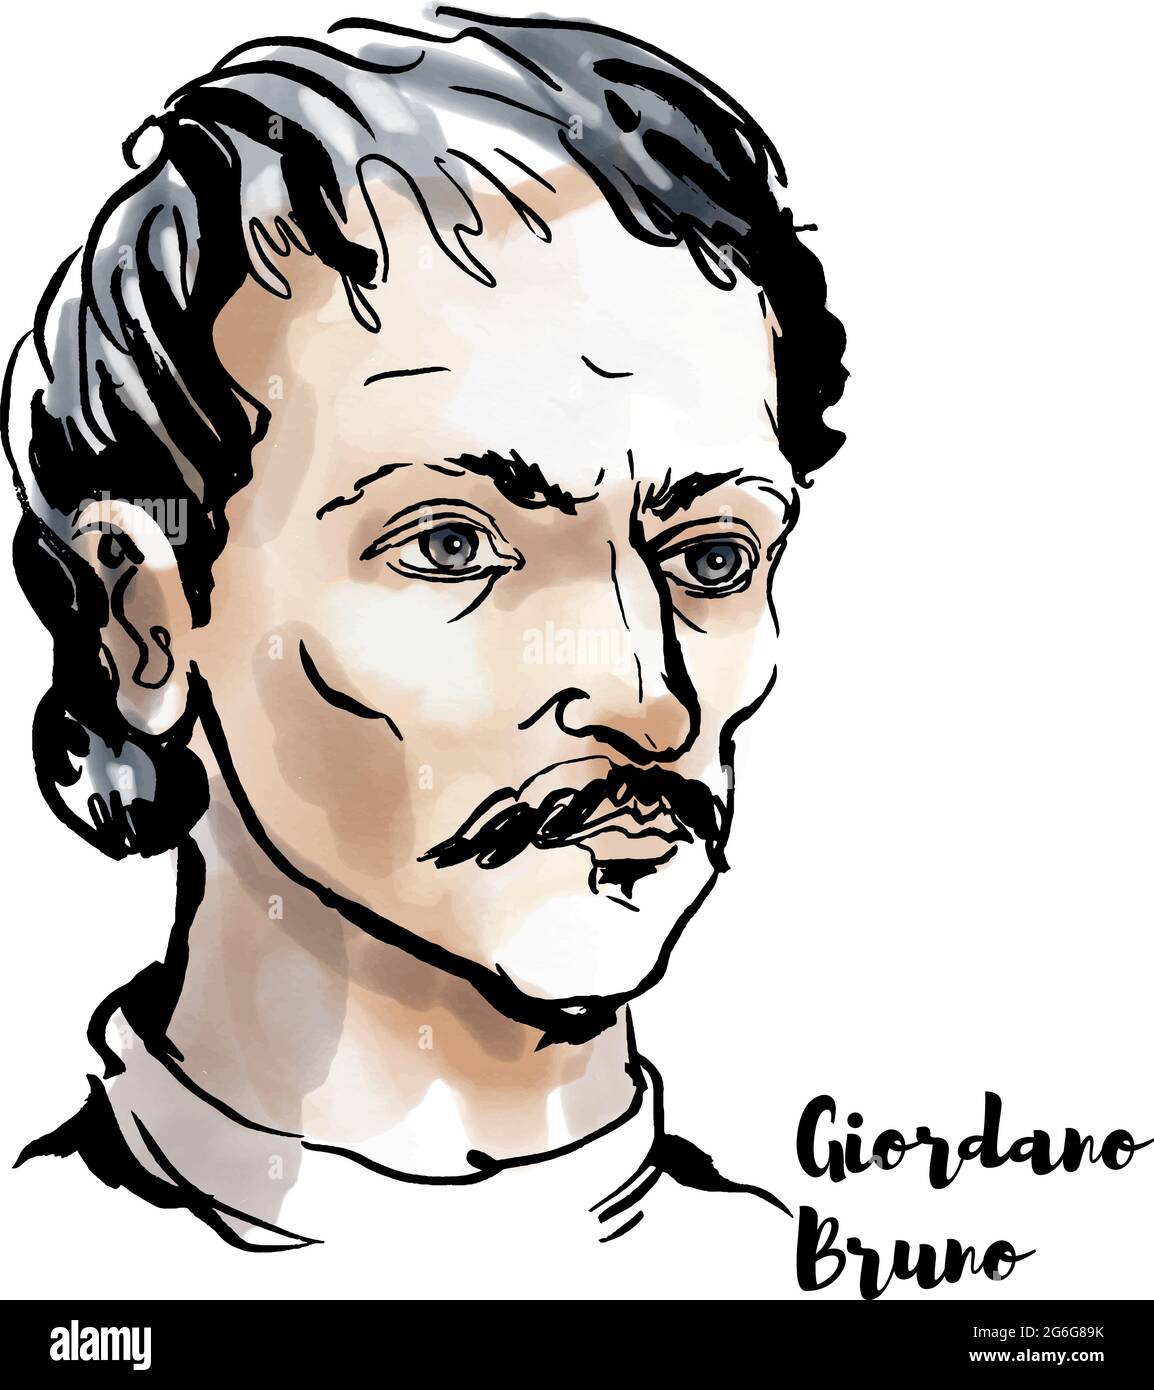 Giordano Bruno Aquarell-Vektor-Porträt mit Farbkonturen. Italienischer Dominikaner, Philosoph, Mathematiker, Dichter und kosmologischer Theoretiker. Stock Vektor